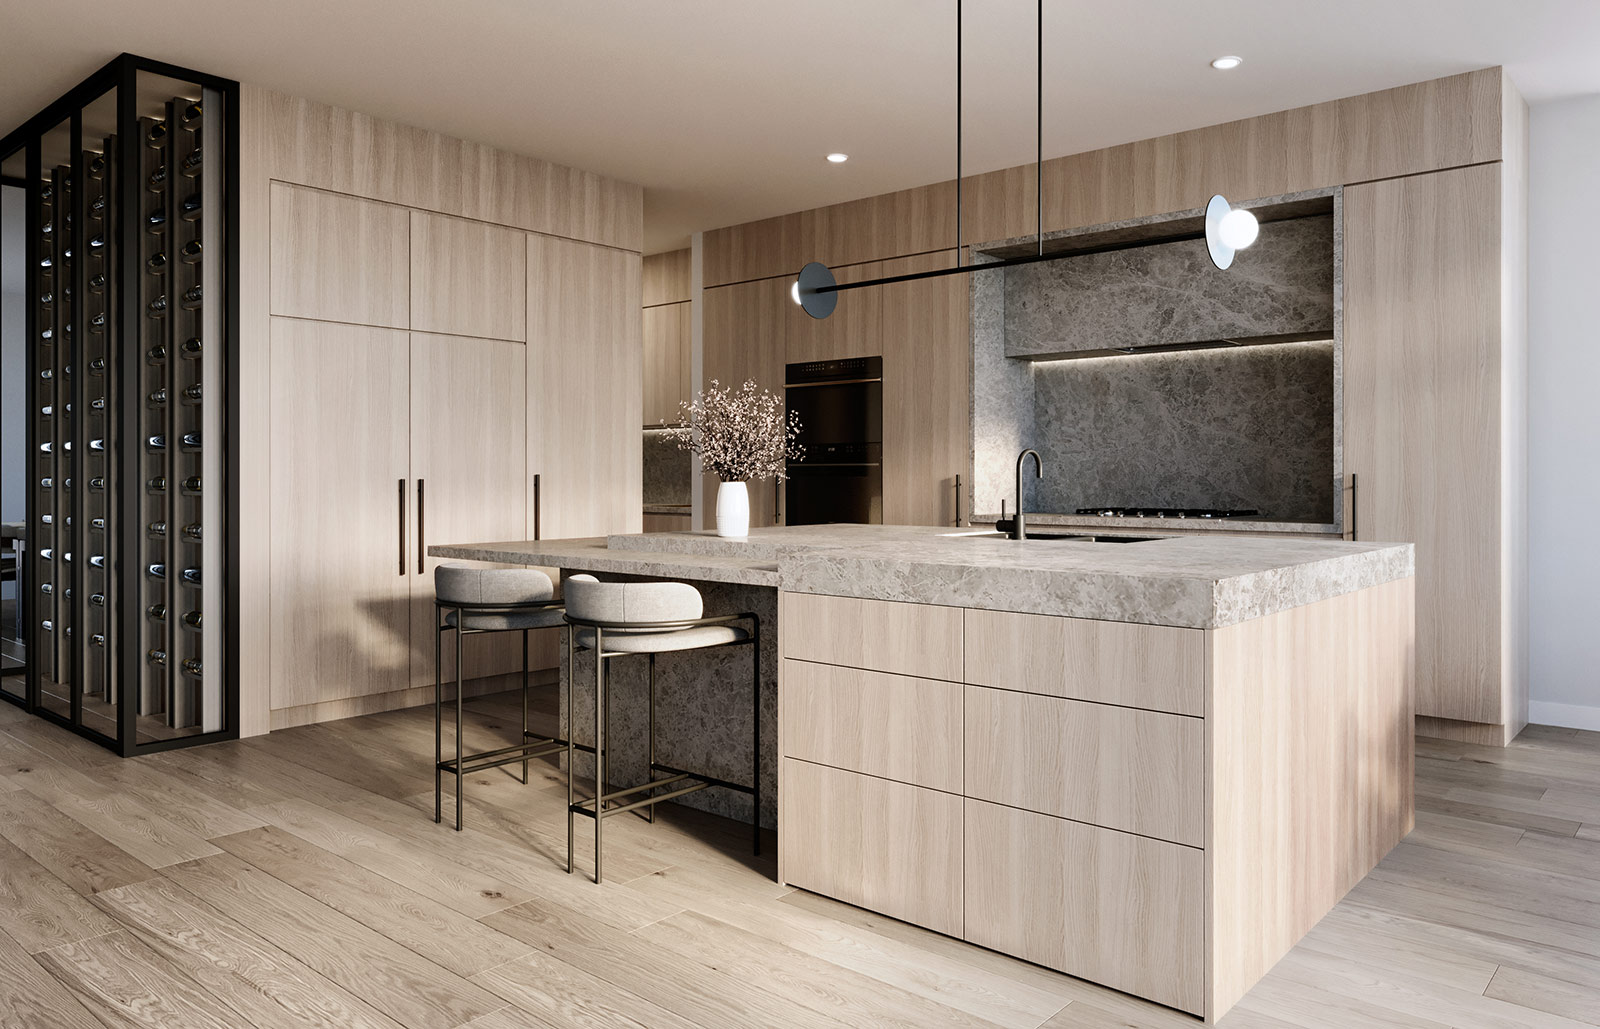 3D render kitchen 3 10721 Hunter Modern Home SUS8893 kitchen 01 0417